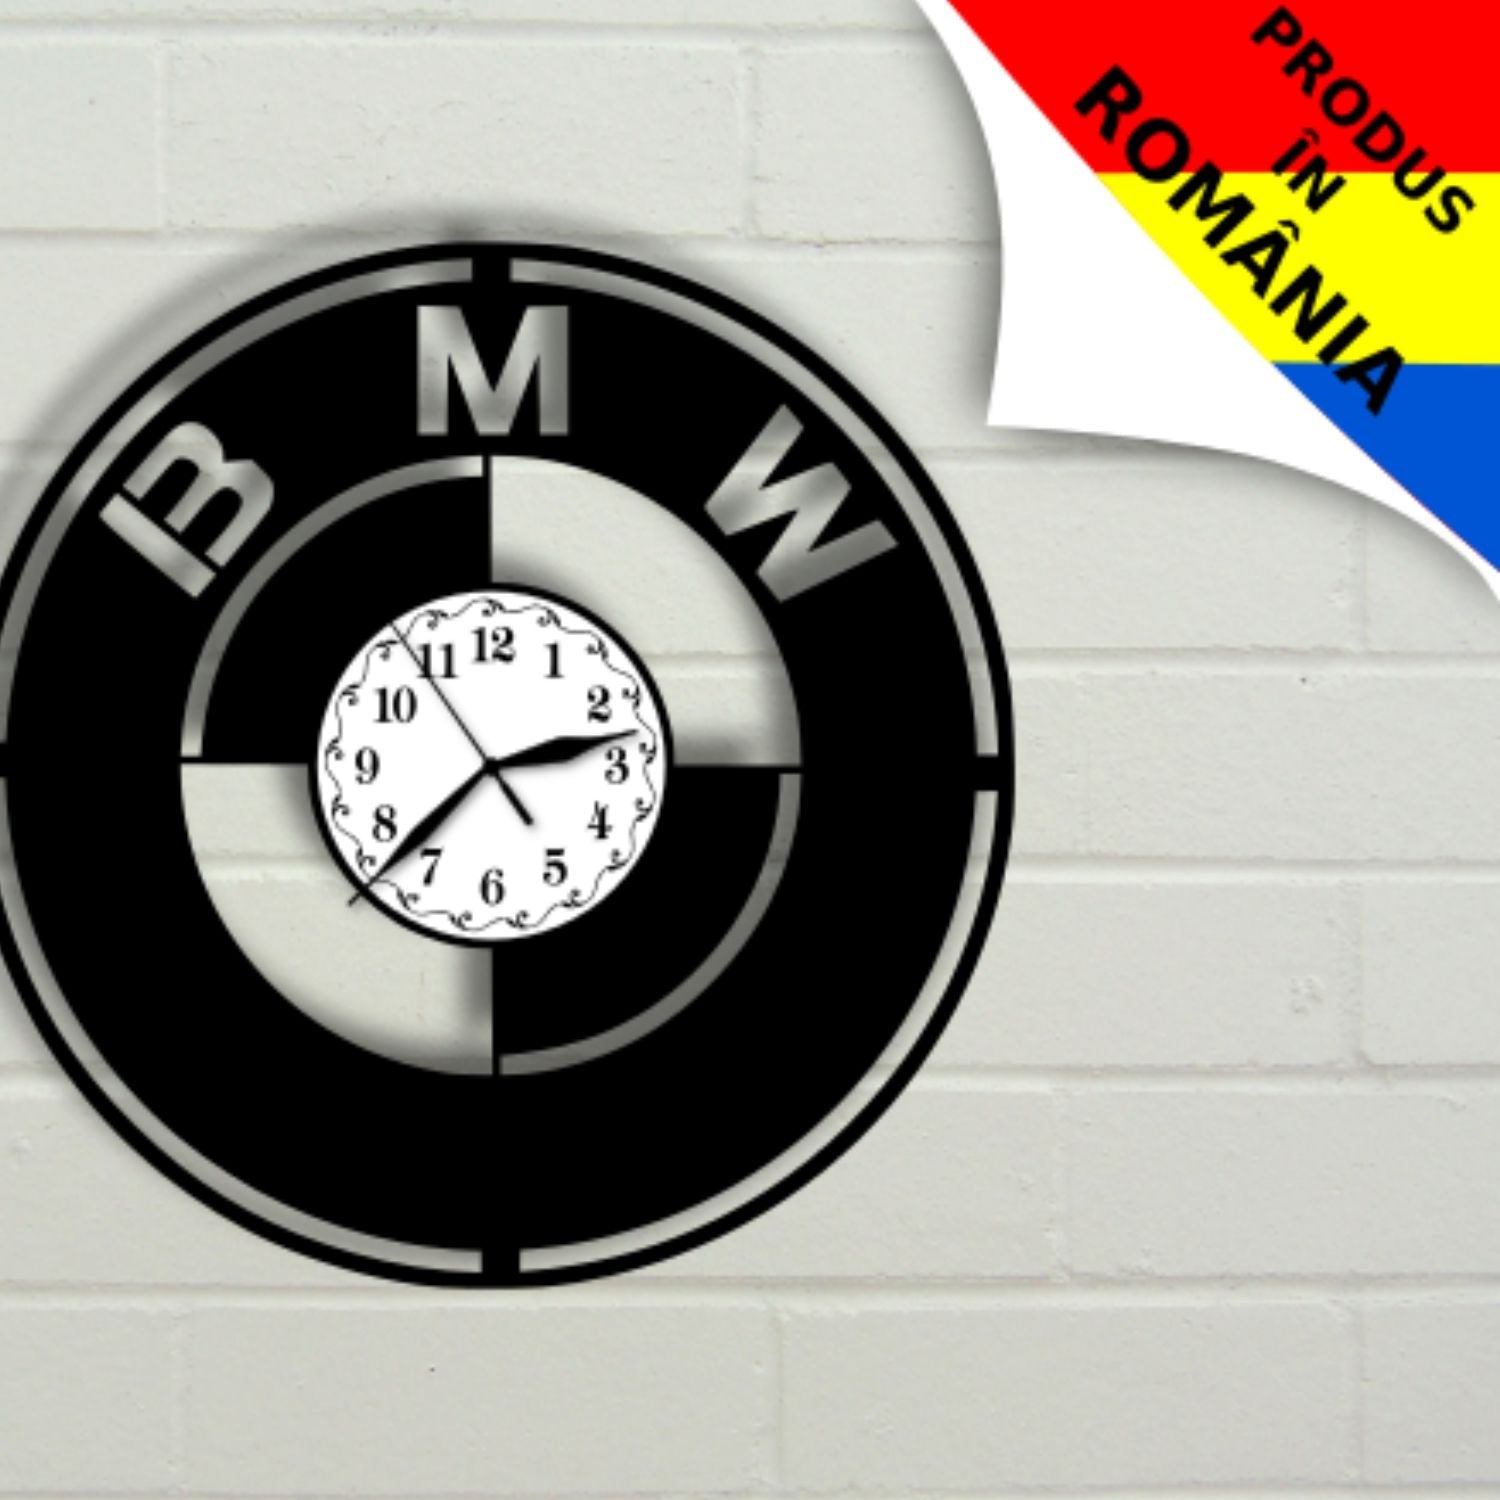 Ceas cadou BMW - model 1 - Cadouri Personalizate